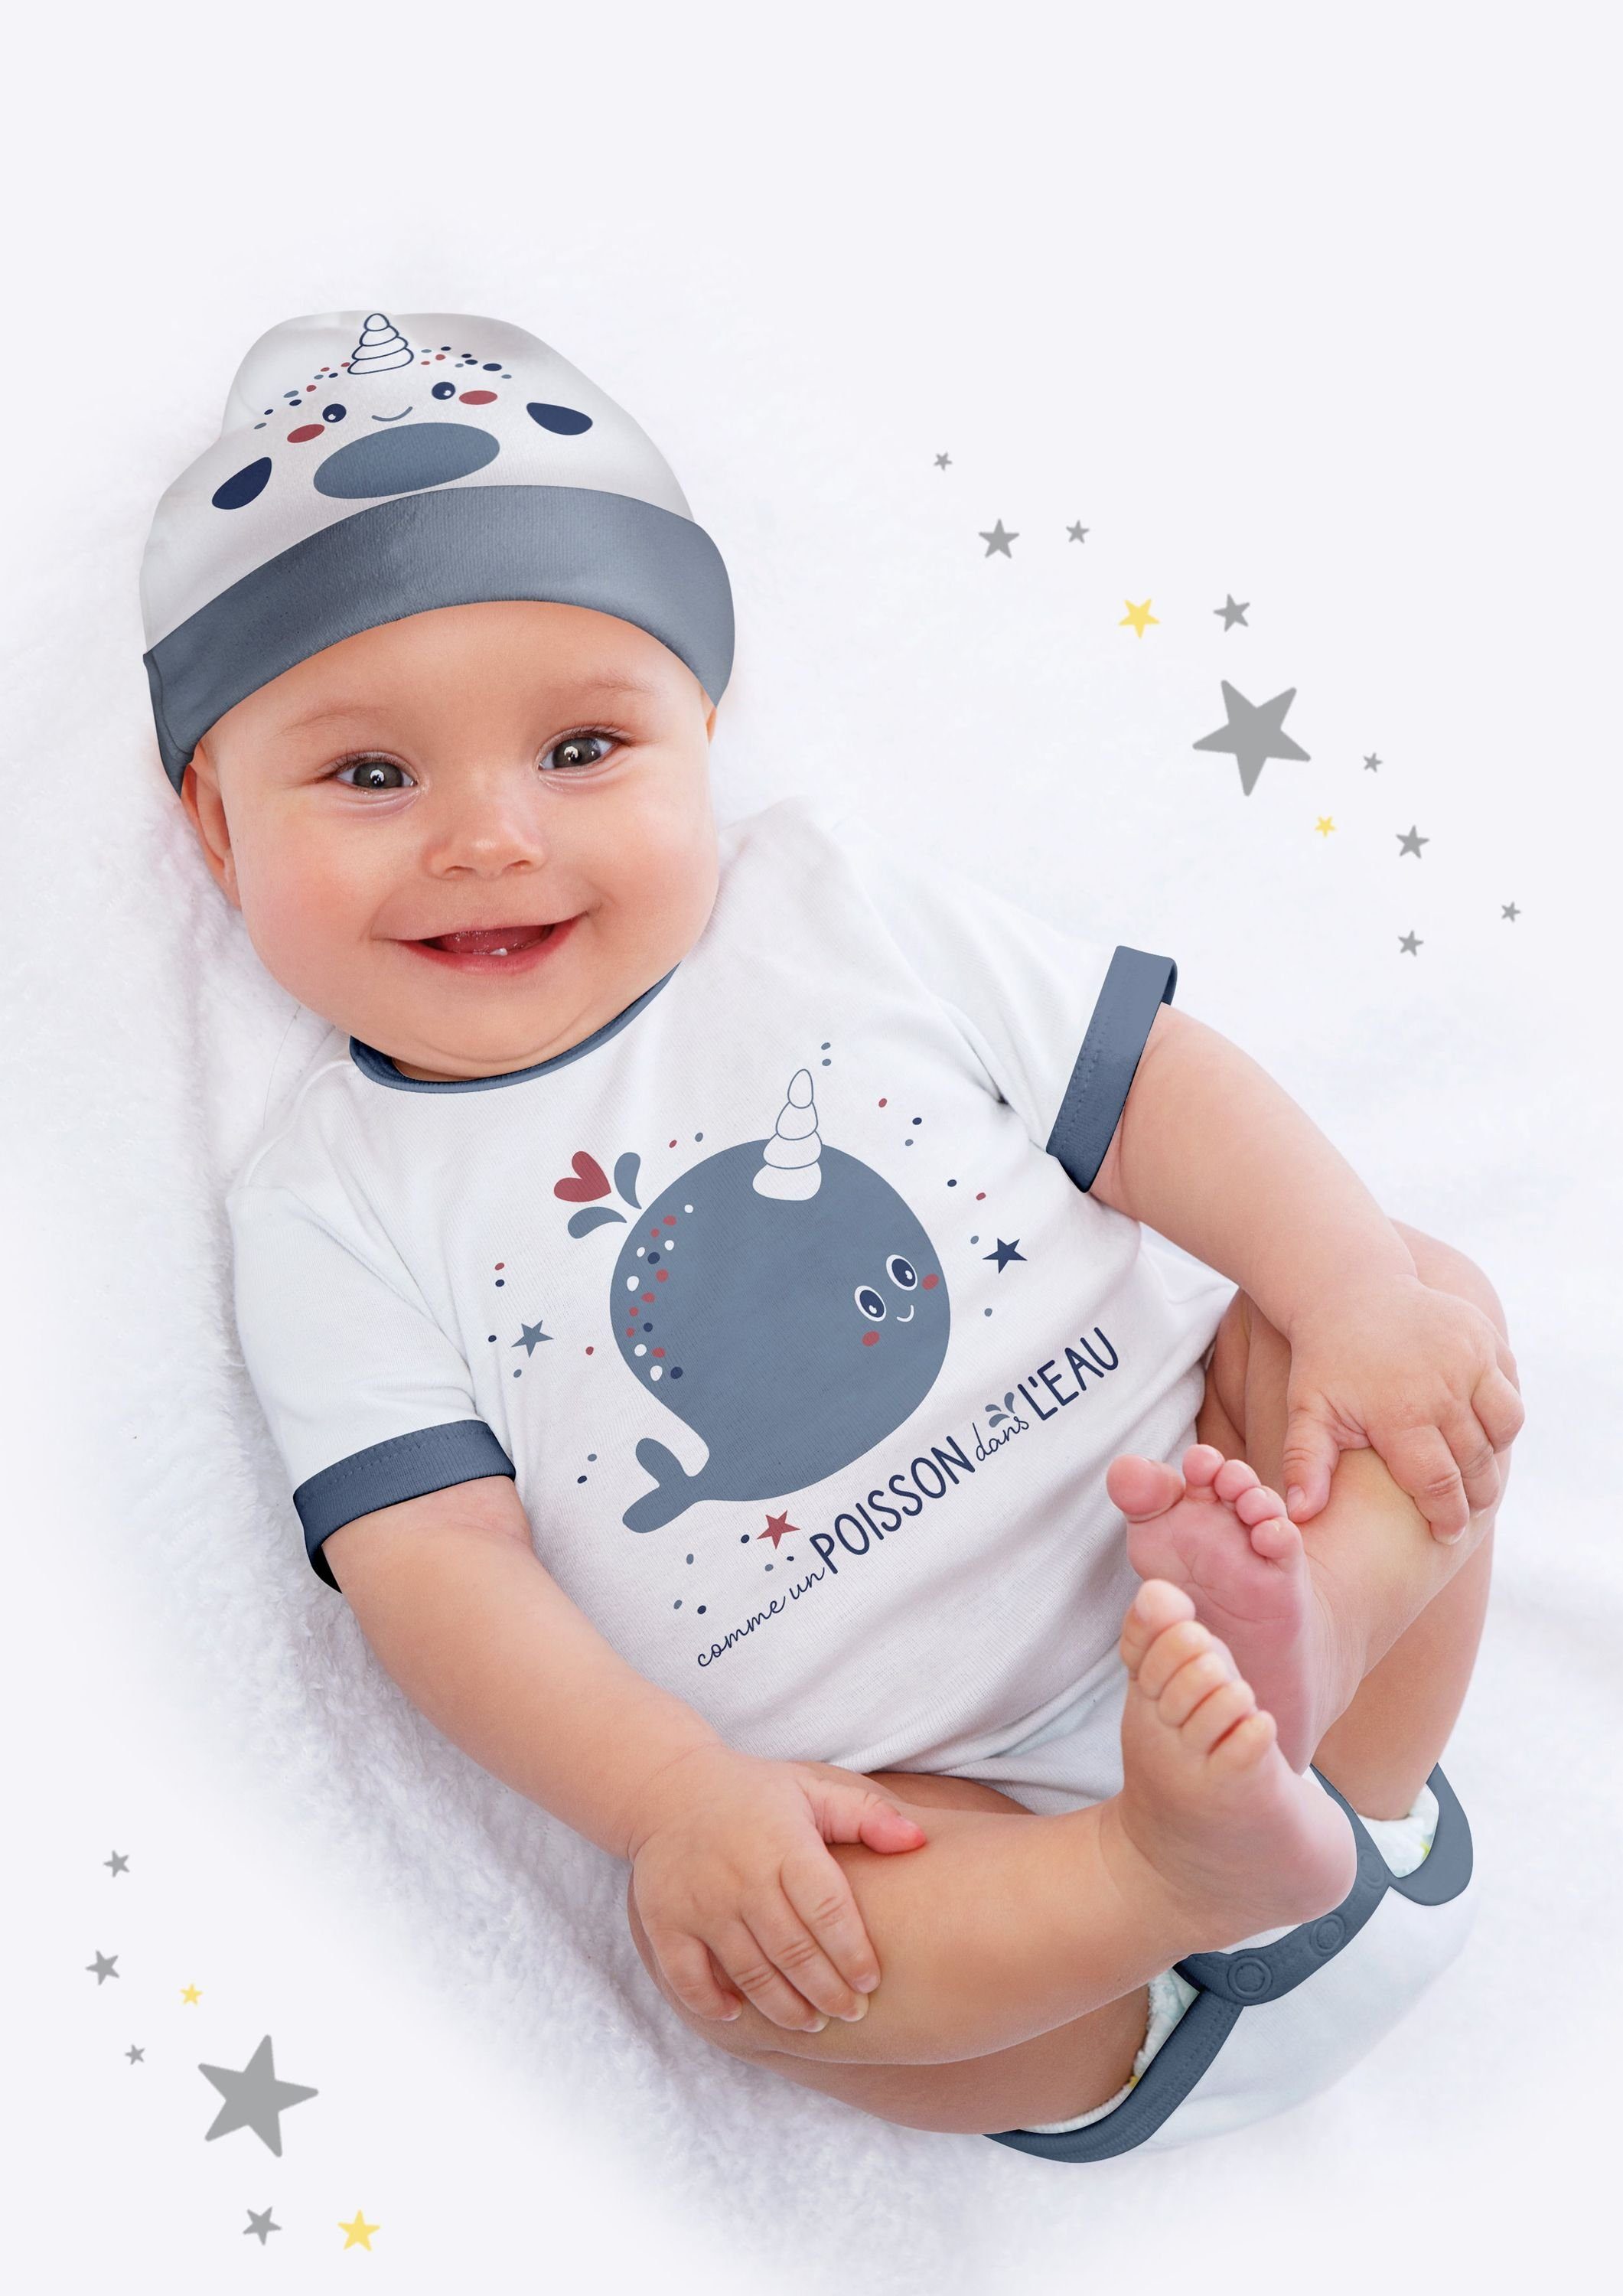 3 tlg. Baby Erstausstattung Outfit Set Geschenk Erstlingsset dynamic24 Sea Neugeborenen-Geschenkset